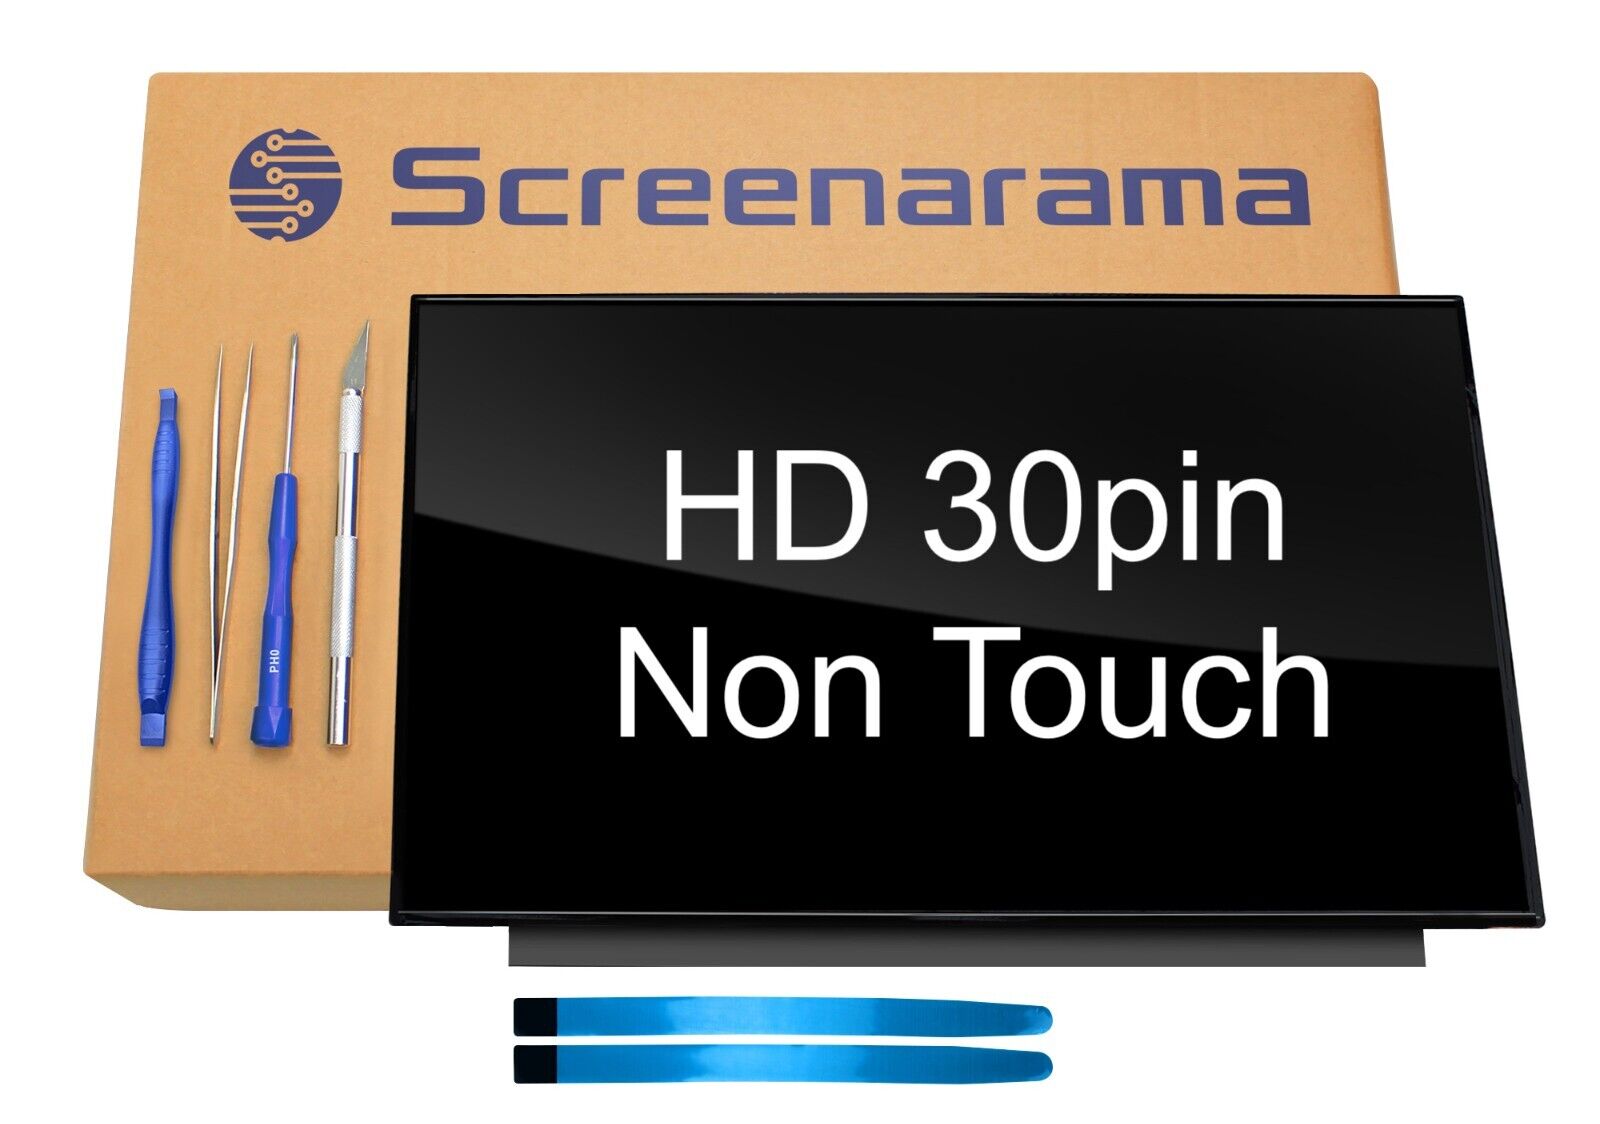 BOE NT140WHM-N51 HD Glossy 30pin LED LCD Screen + Tools Tape SCREENARAMA * FAST